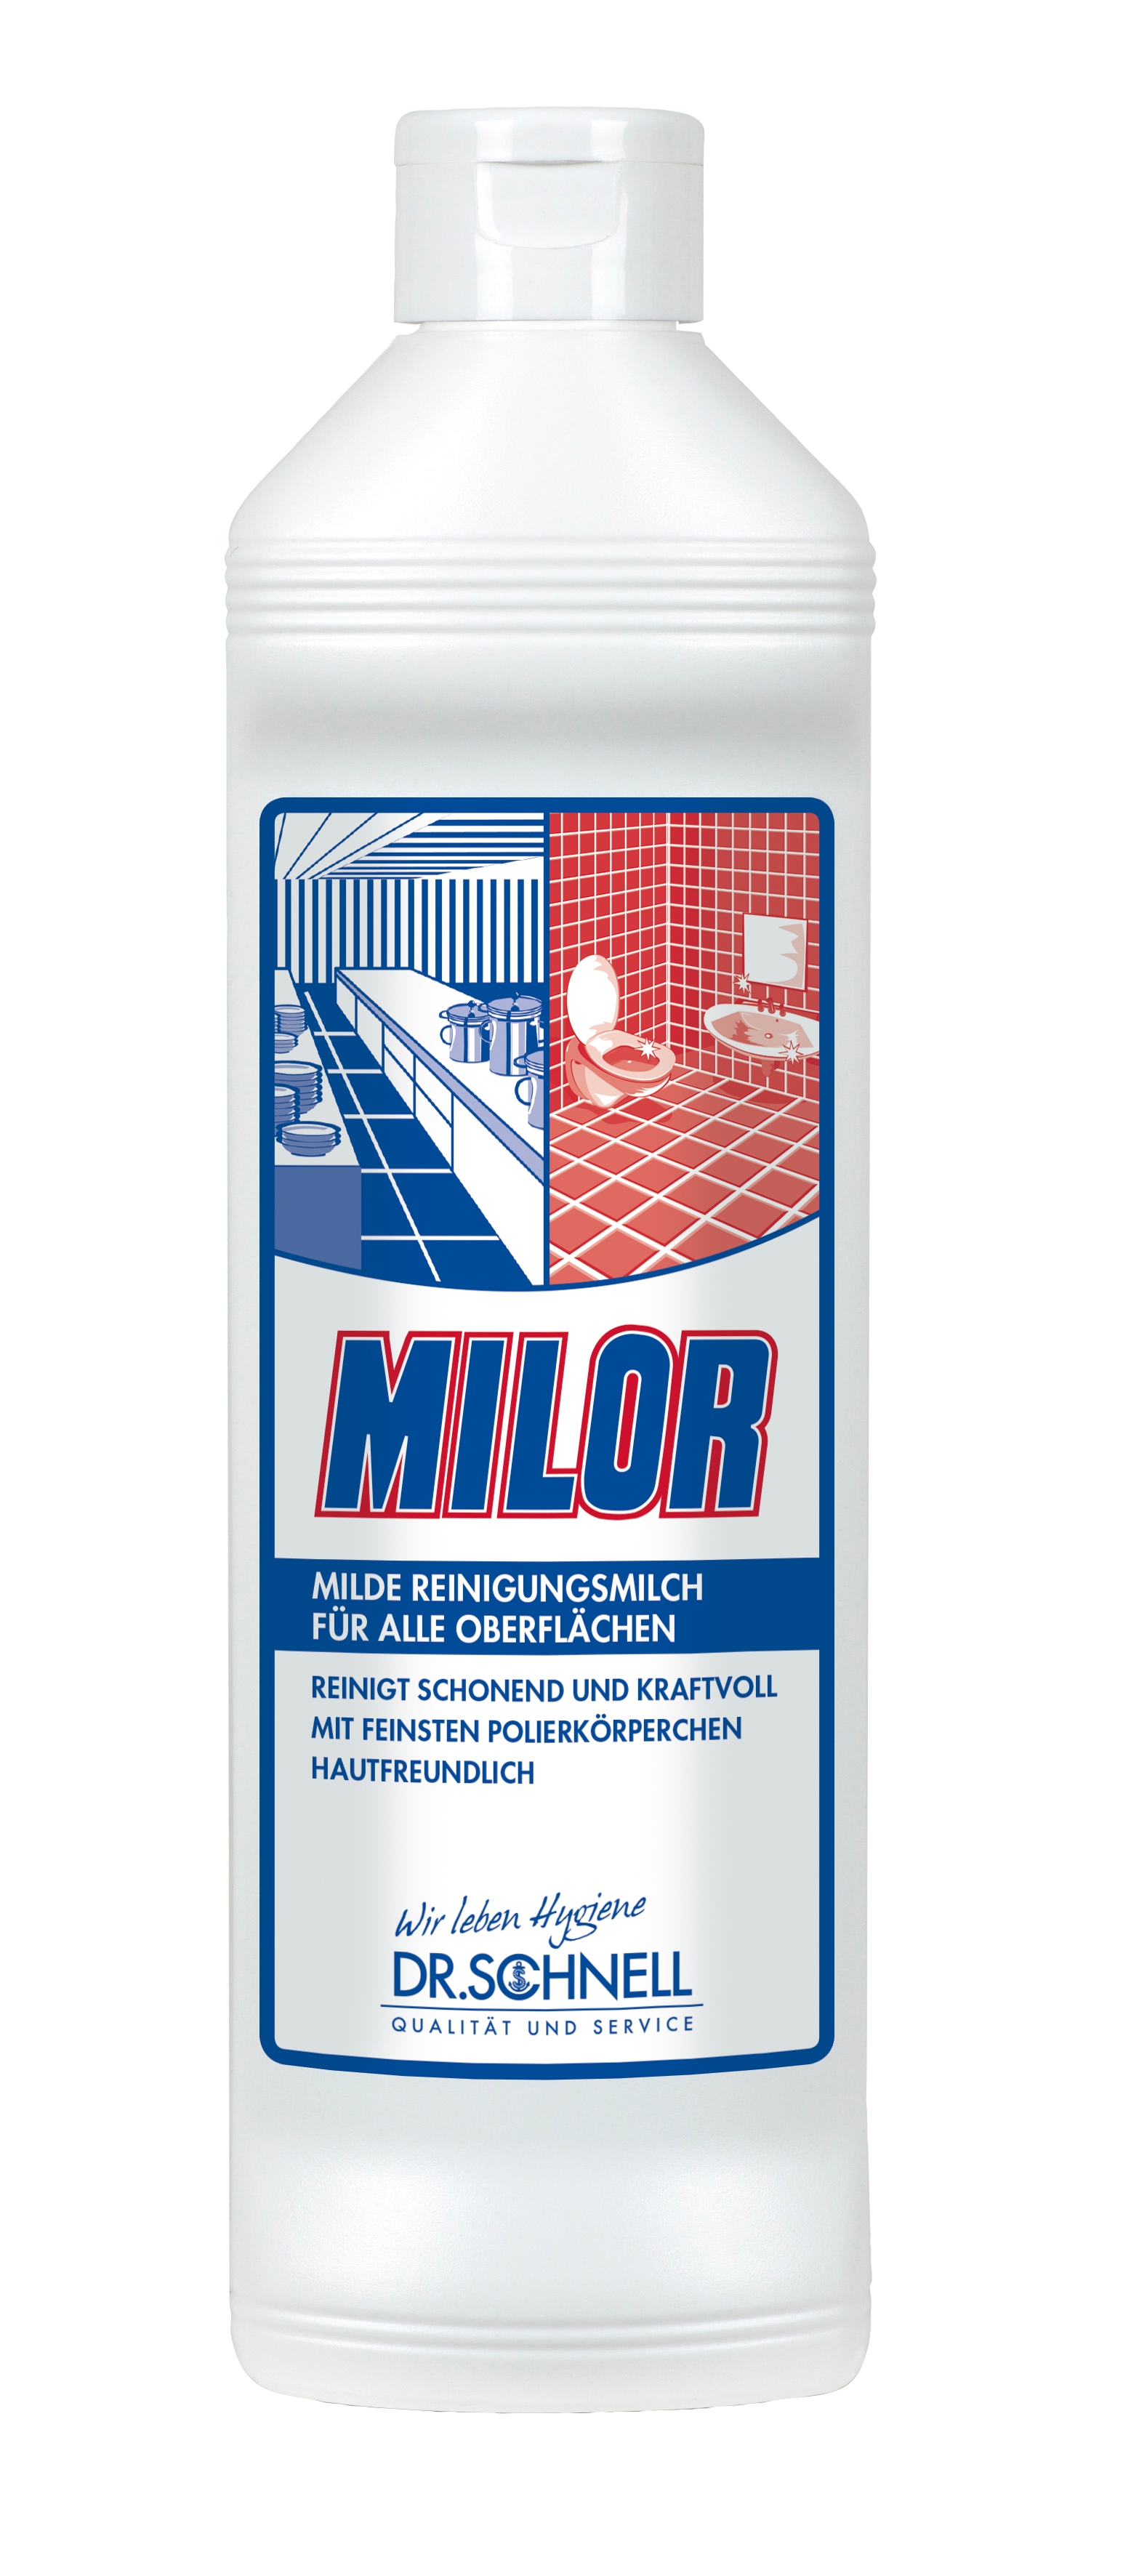 MILOR Reinigungsmilch, 500 ml,Dr. Schnell, 20 Fla./Krt.